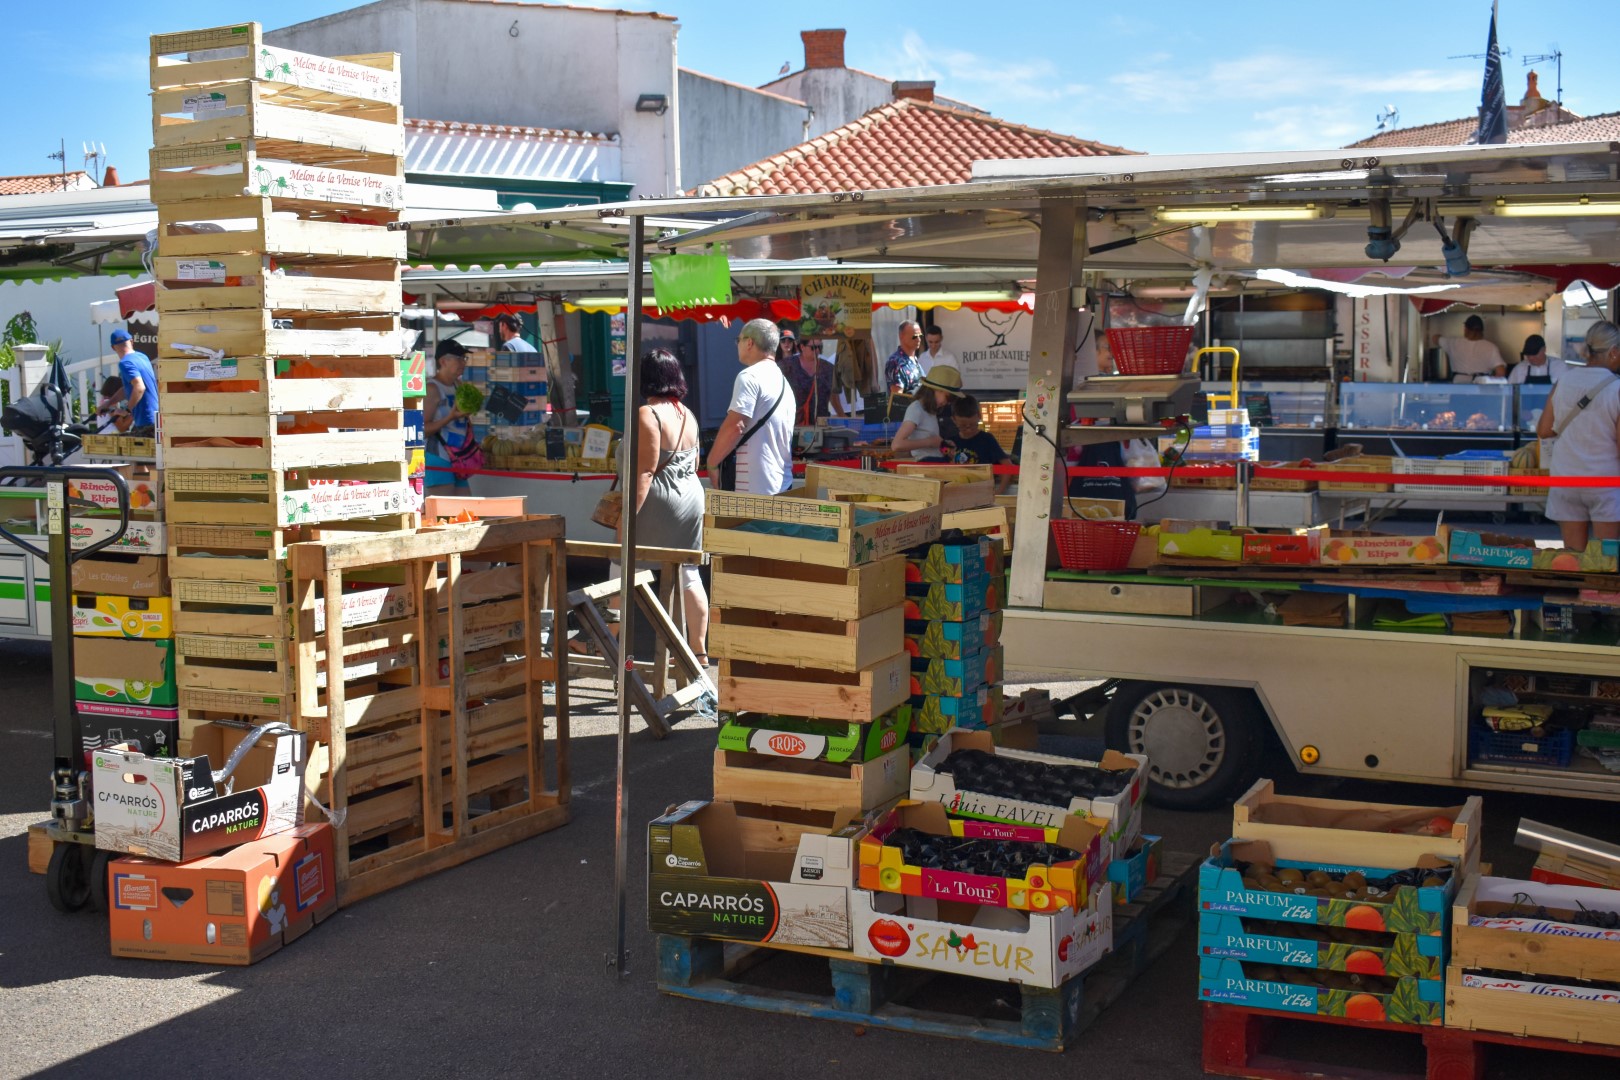 Wednesday market in Église Sainte-Croix de Saint-Gilles-Croix-de-Vie, Saint-Gilles-Croix-de-Vie